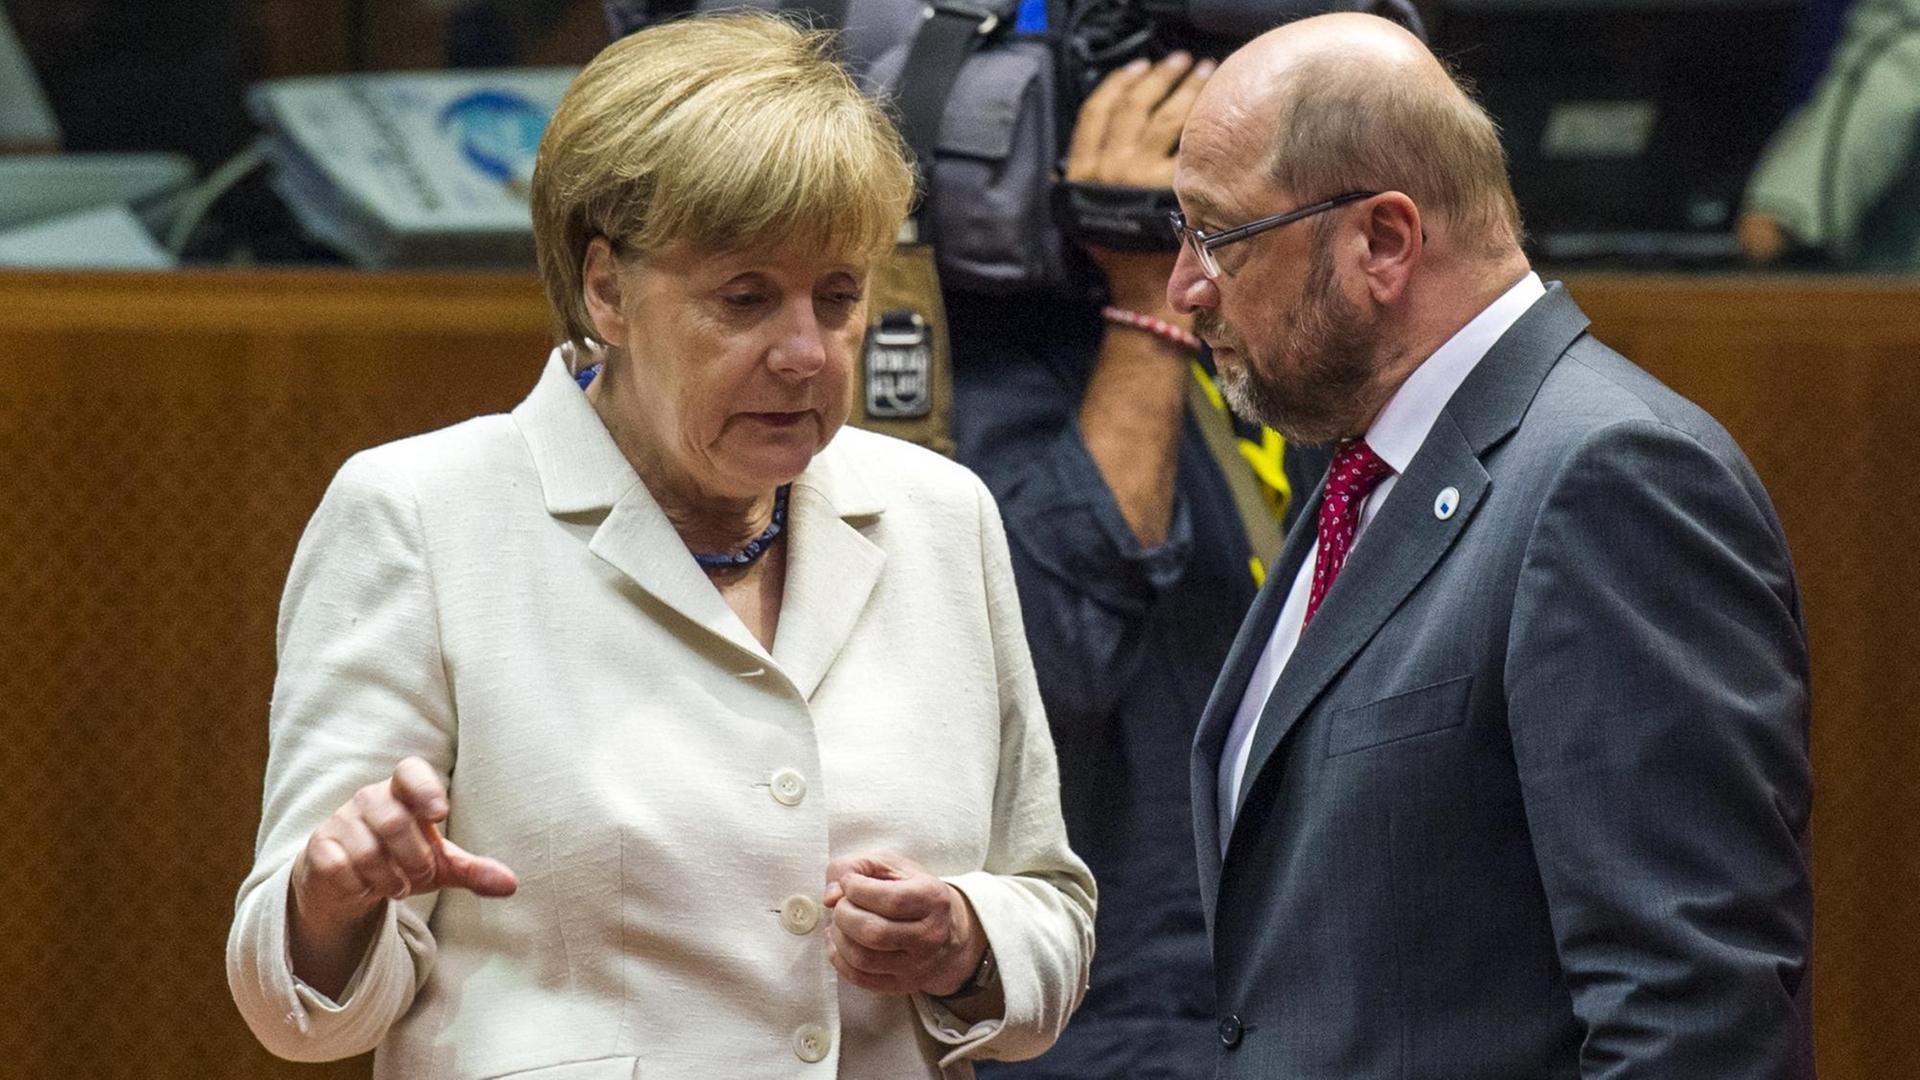 Bundeskanzlerin Angela Merkel und EU-Parlamentspräsident Martin Schulz reden während eines Gipfels in Brüssel zur Schuldenkrise in Griechenland